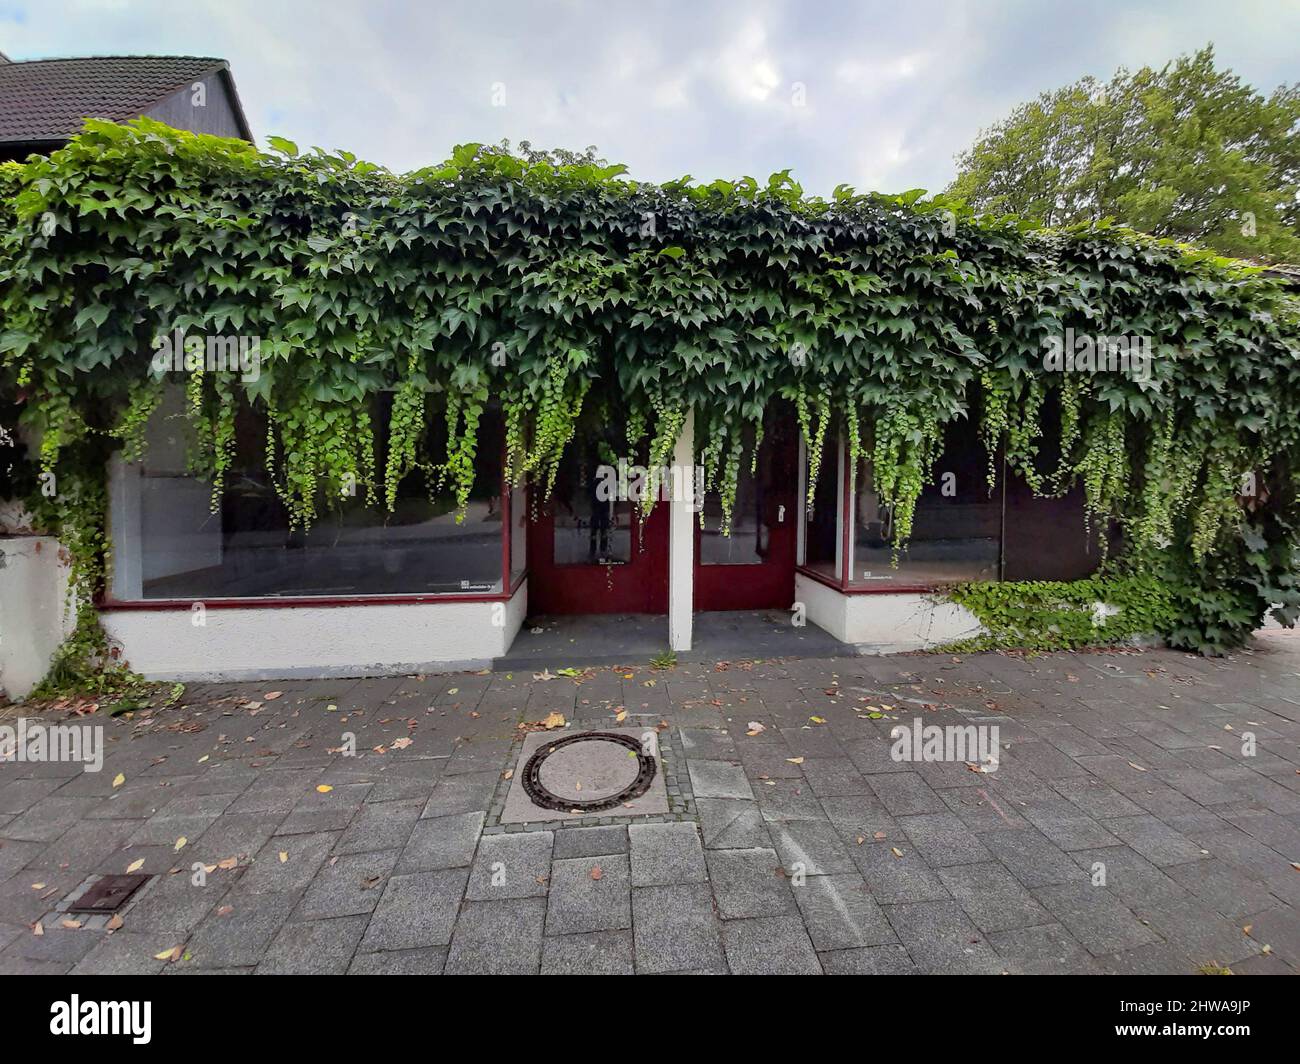 Boston ivy, super-réducteur japonais (Parthenocissus tricuspidata), boutique libre surcultivée avec ivy, Allemagne Banque D'Images